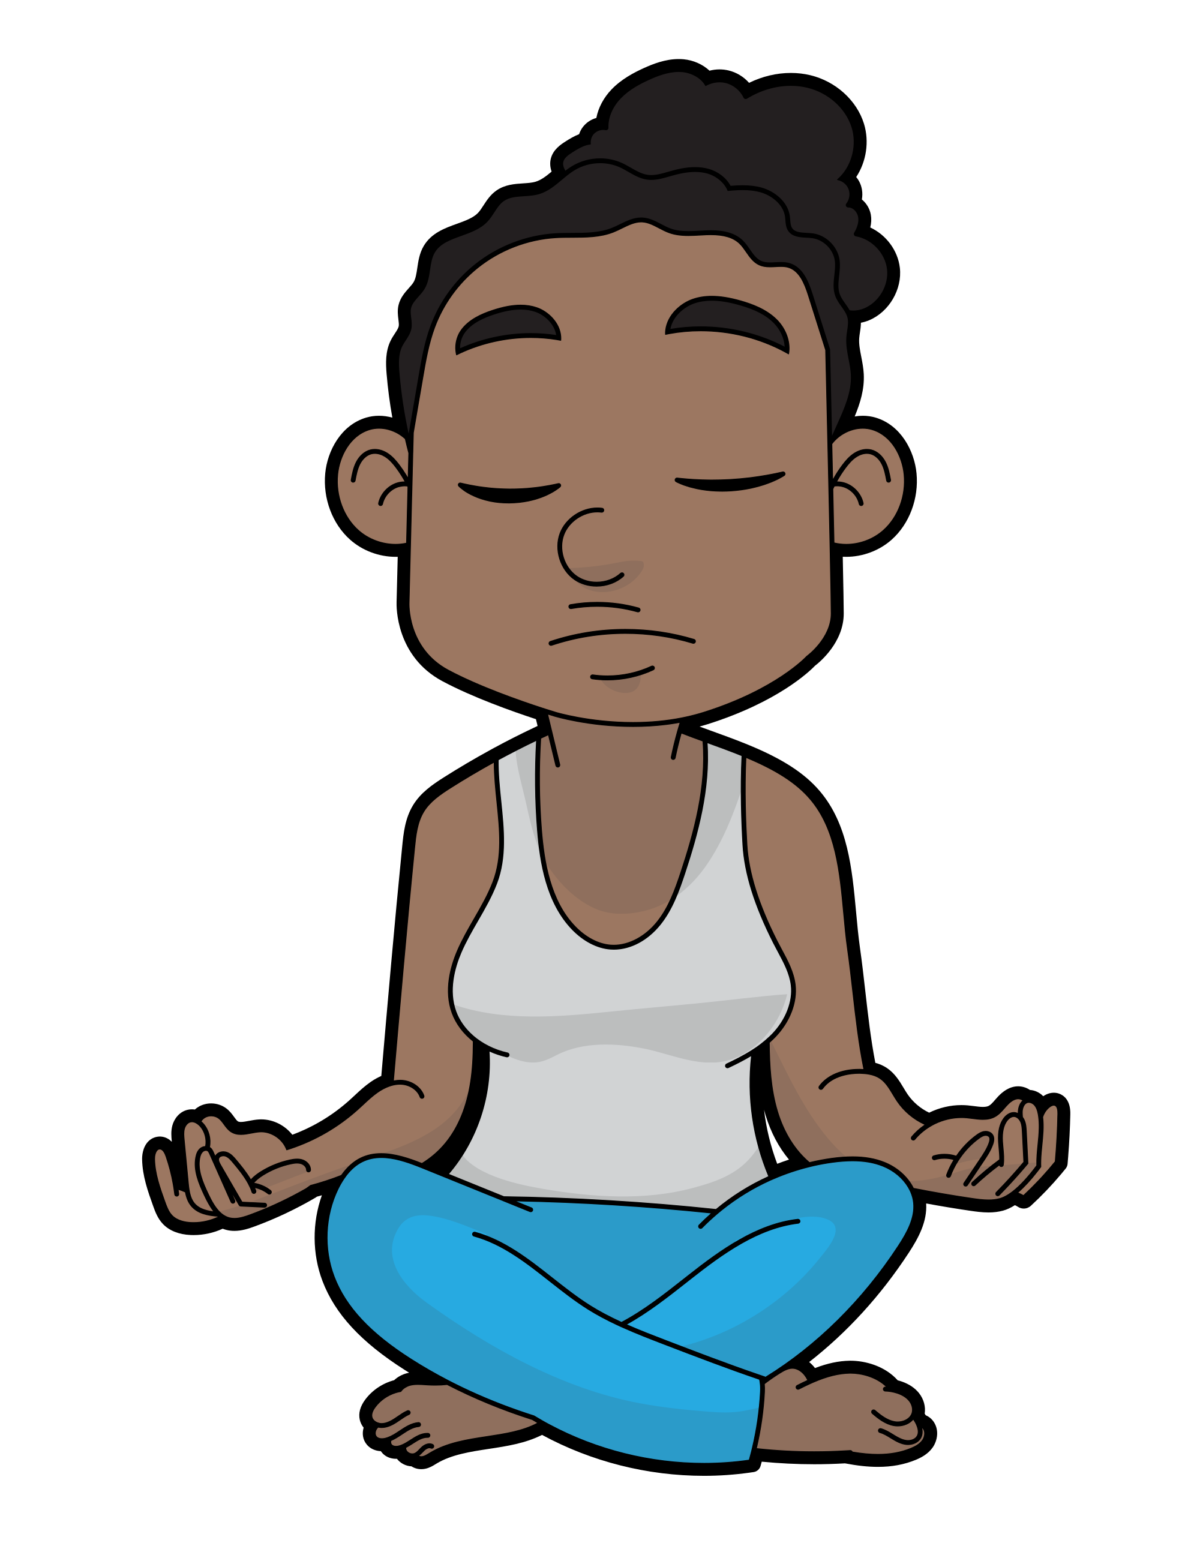 Meditation child meditation